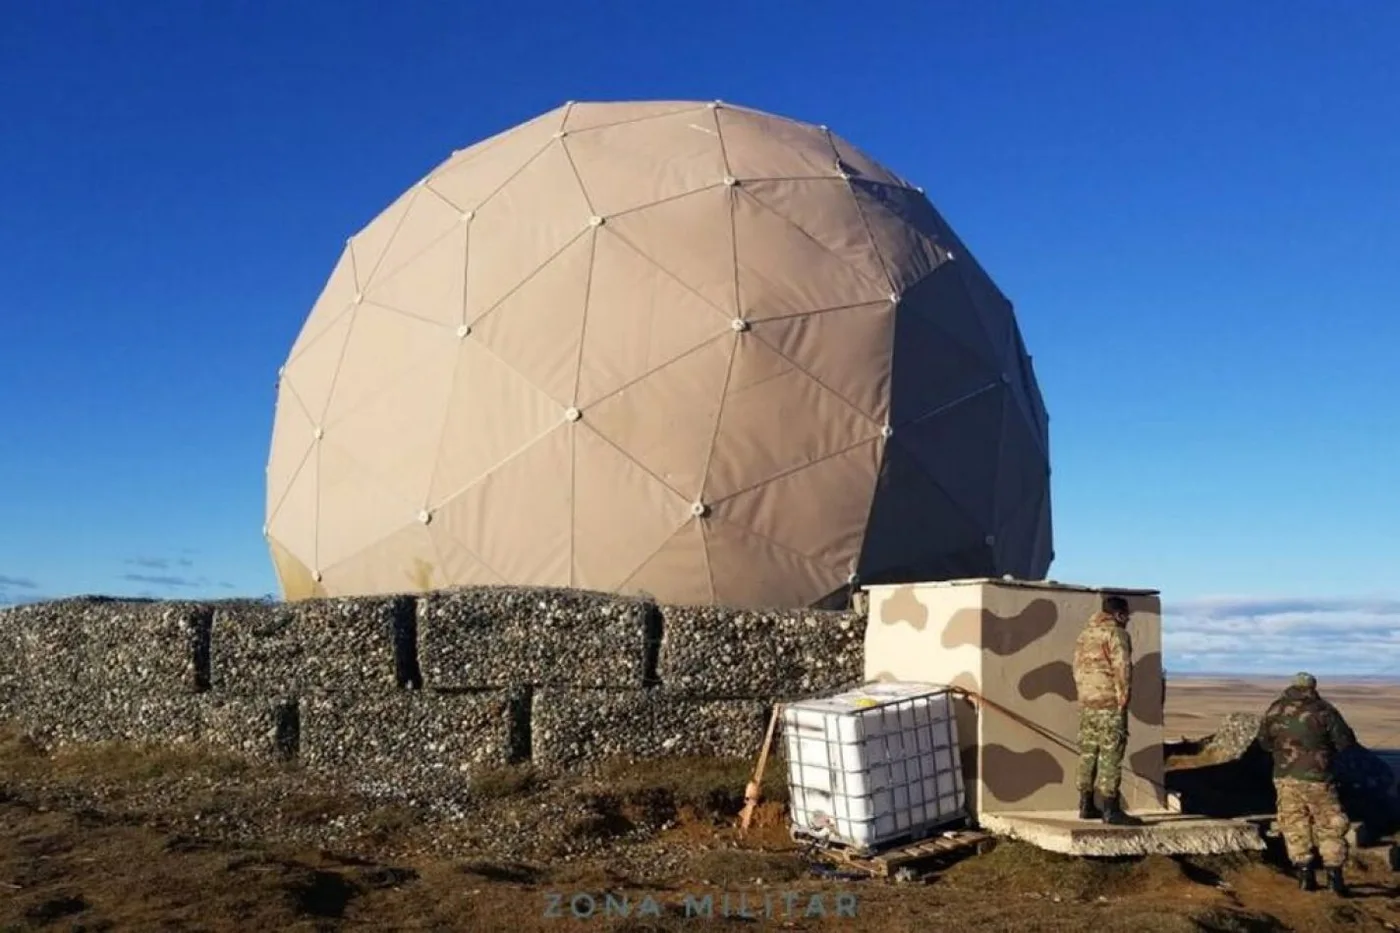 El RPA-170M es un radar táctico de defensa aérea 3D de mediano alcance y de última generación, que opera desde Río Grande, Tierra del Fuego.